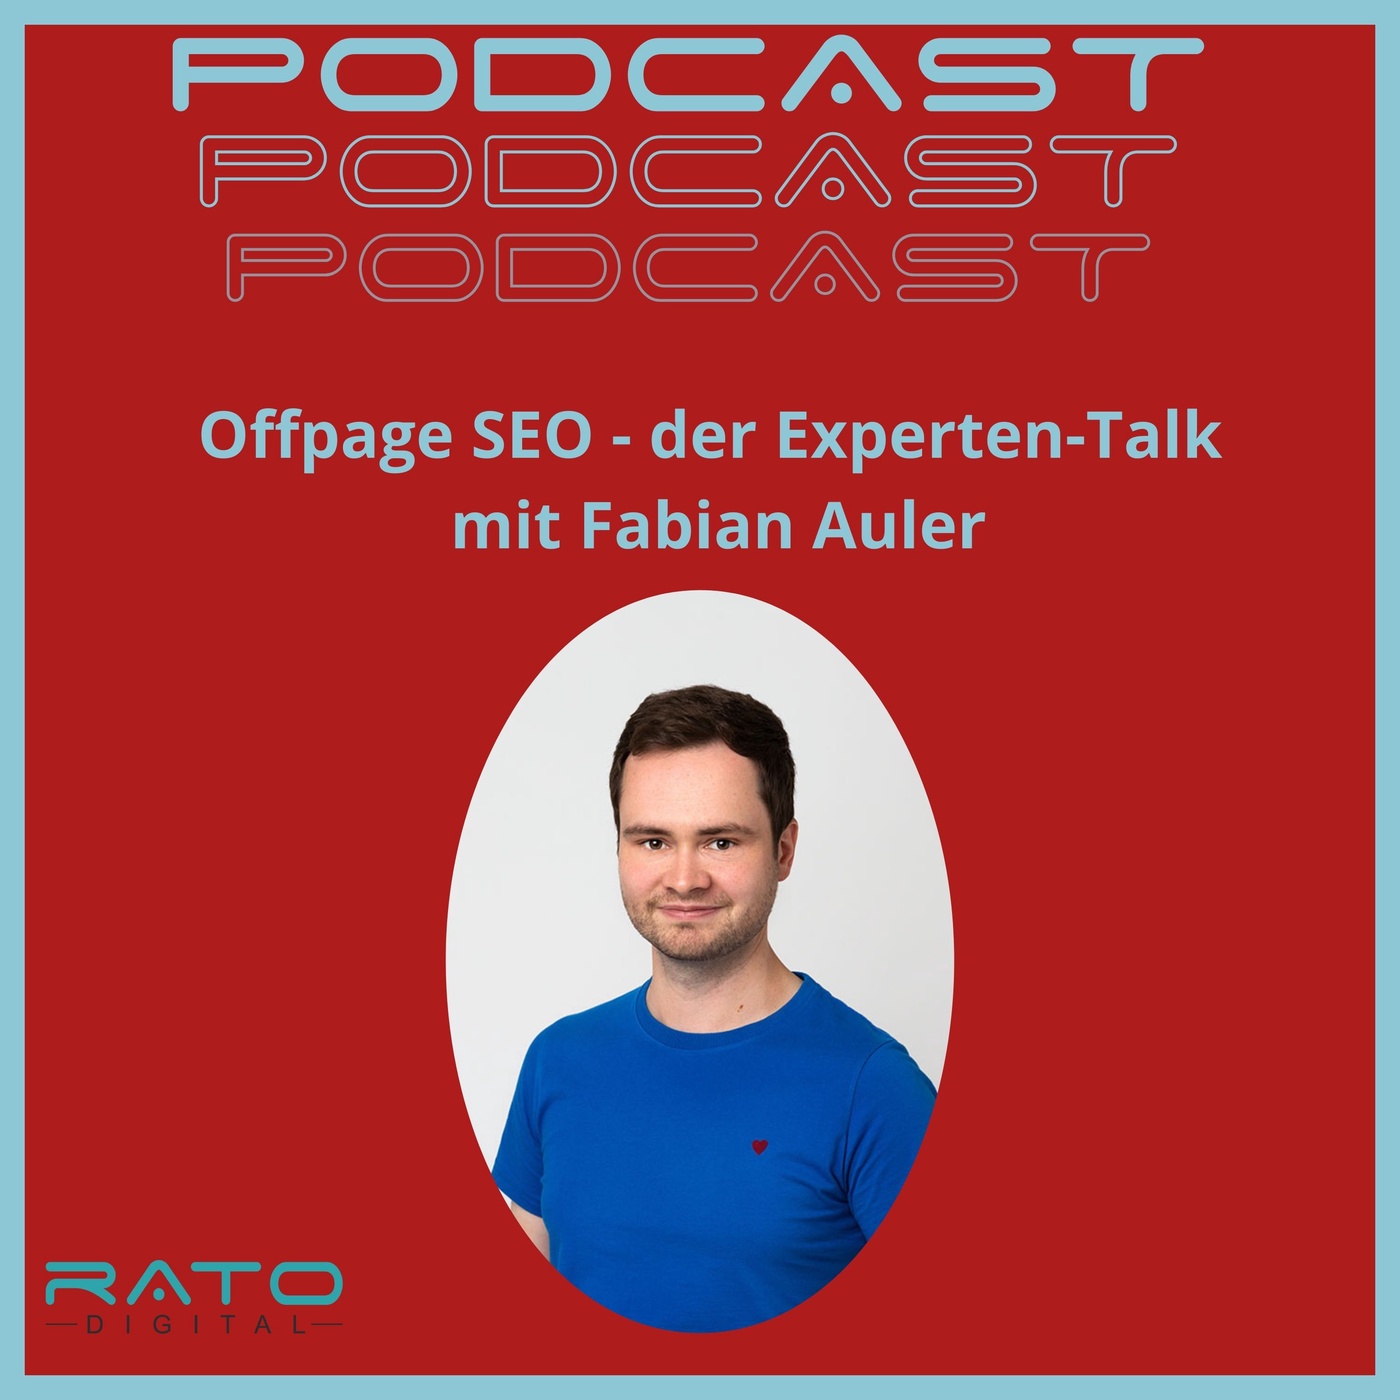 Offpage SEO - der Experten-Talk mit Fabian Auler